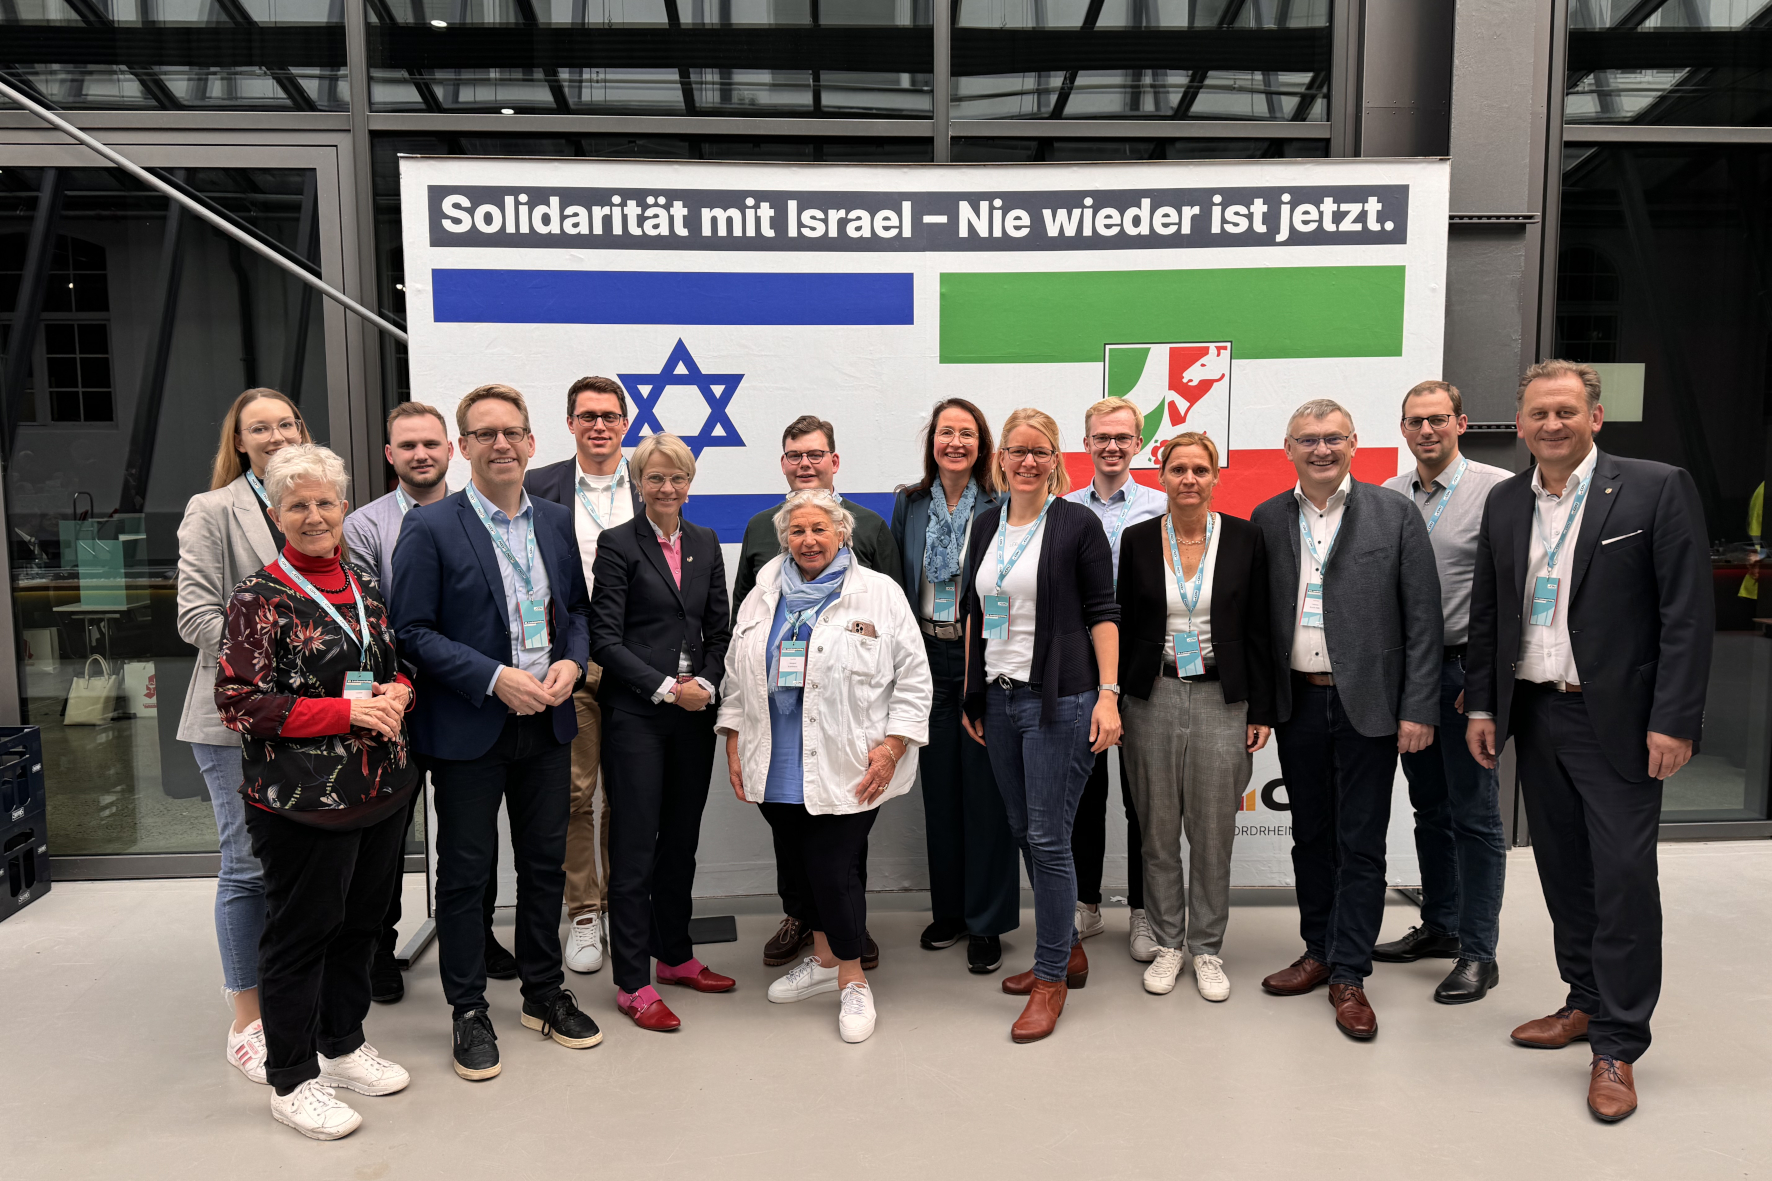 Schulministerin Dorothee Feller (6.v.l.) und die heimischen Delegierten stehen an der Seite Israels. Zu der Gruppe aus dem Kreis Coesfeld gehörten der CDU-Kreisvorsitzende Marc Henrichmann (4.v.l.) sowie die Landtagsabgeordneten Wilhelm Korth (3.v.r.) und